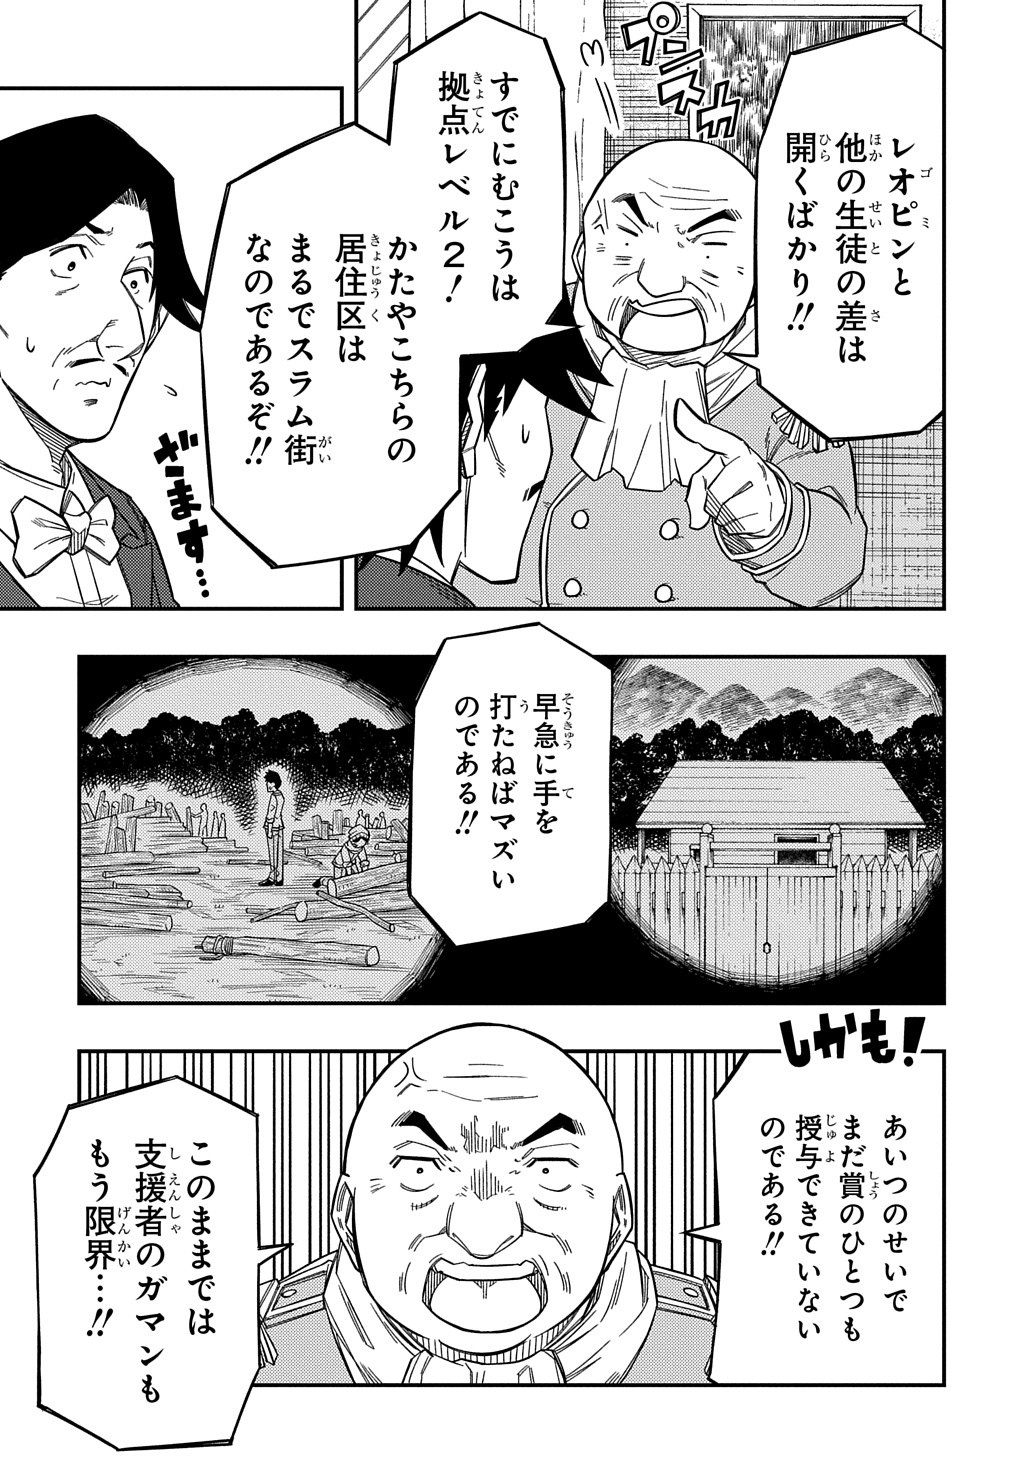 Kiyoubinbou, Jou wo Tateru – Kaitaku Gakuen no Rettousei na no ni, Joukyuu-shoku no Skill to Mahou ga Subete Tsukaemasu - Chapter 21.1 - Page 3